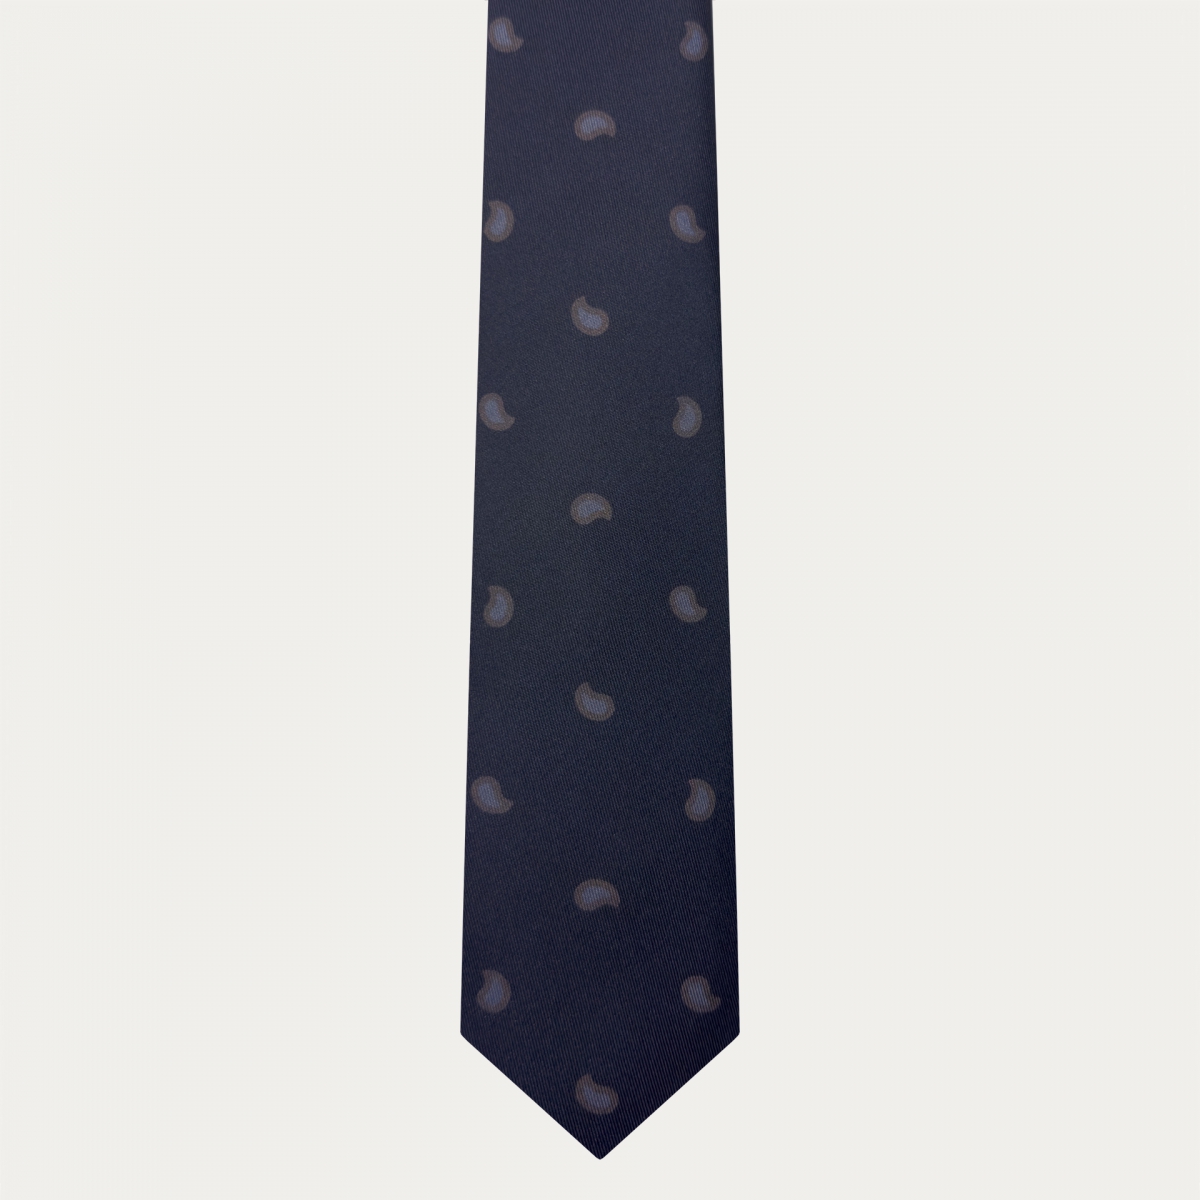 Cravate en soie pour homme avec motif paisley macro imprimé